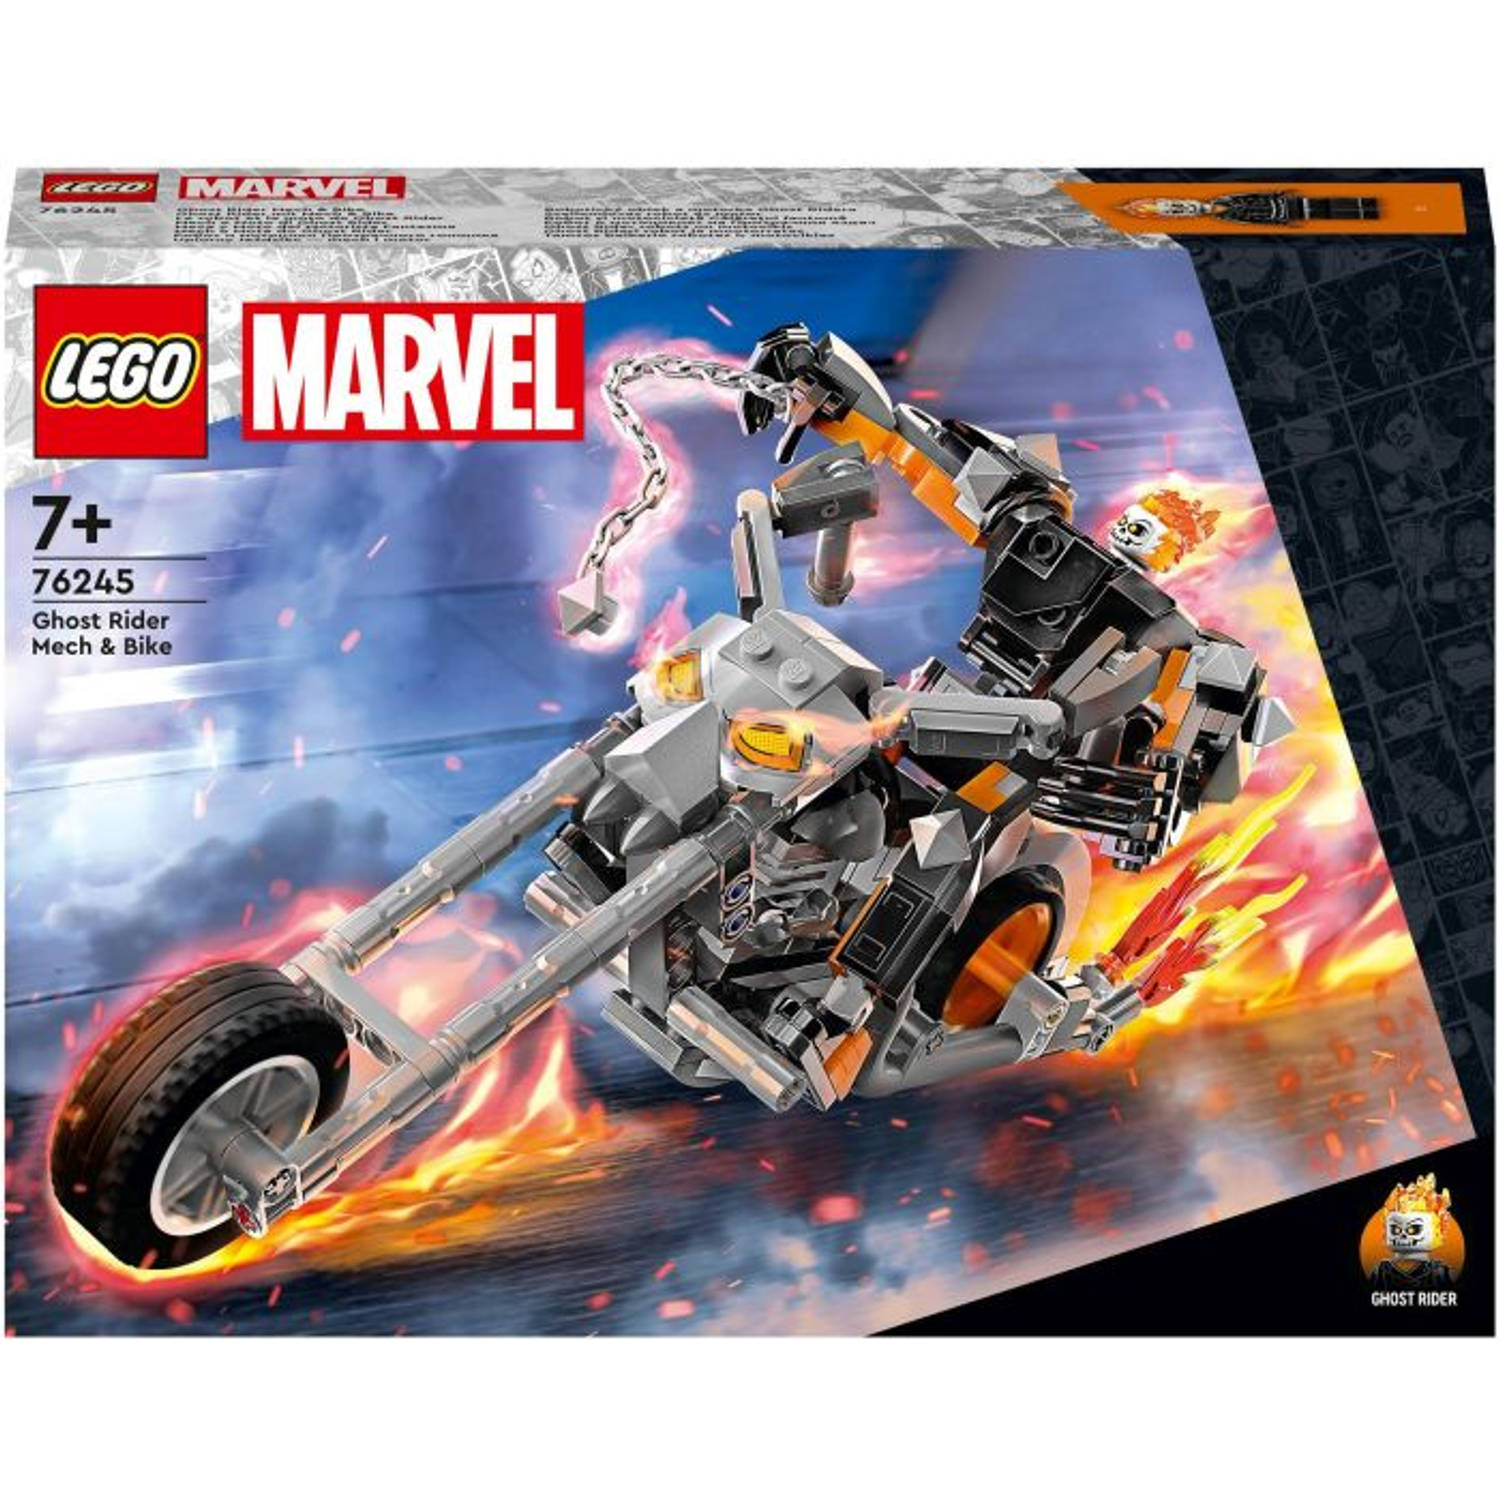 LEGOÂ® Marvel Avengers 76245 Ghost Rider Mech & motor